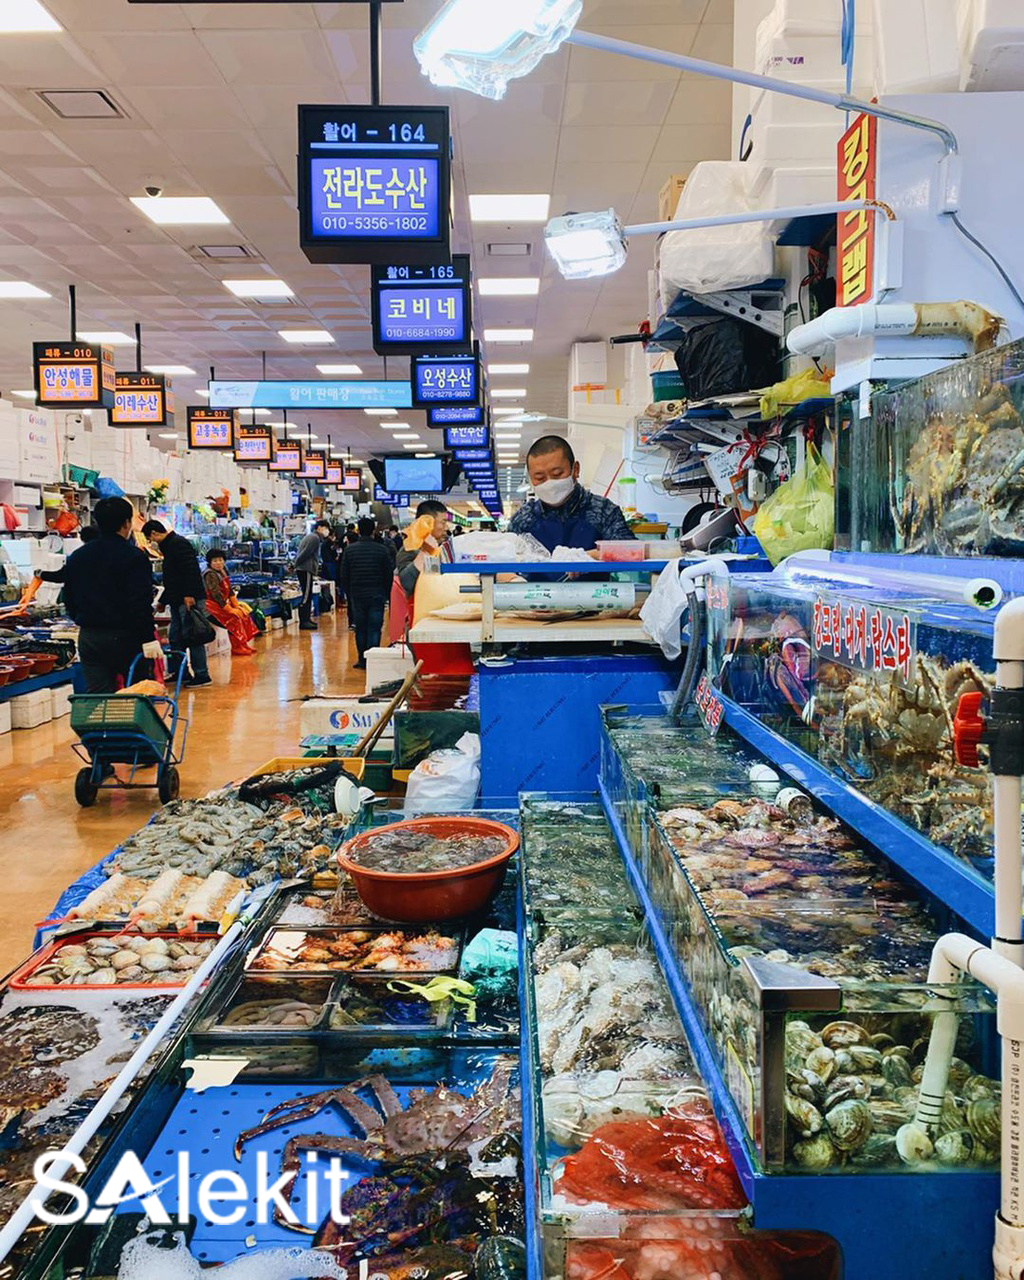 Chia sẻ 5 kinh nghiệm mở cửa hàng hải sản tươi sống từ AZ cho người mới